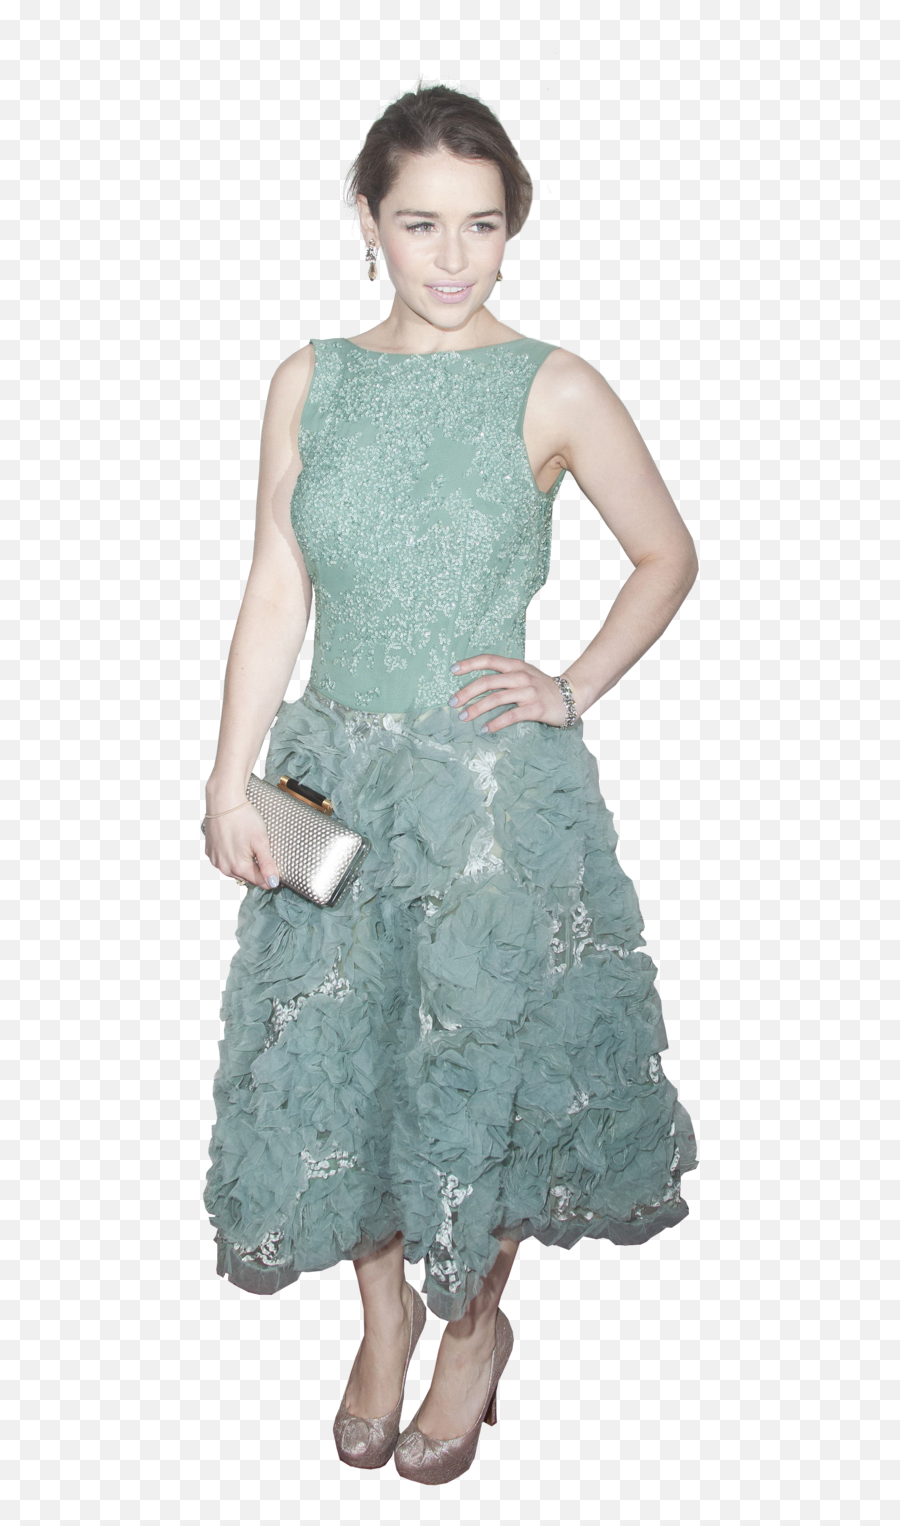 Download Emilia Clarke Png Pic - Emilia Clarke In Green Dress,Emilia Clarke Png